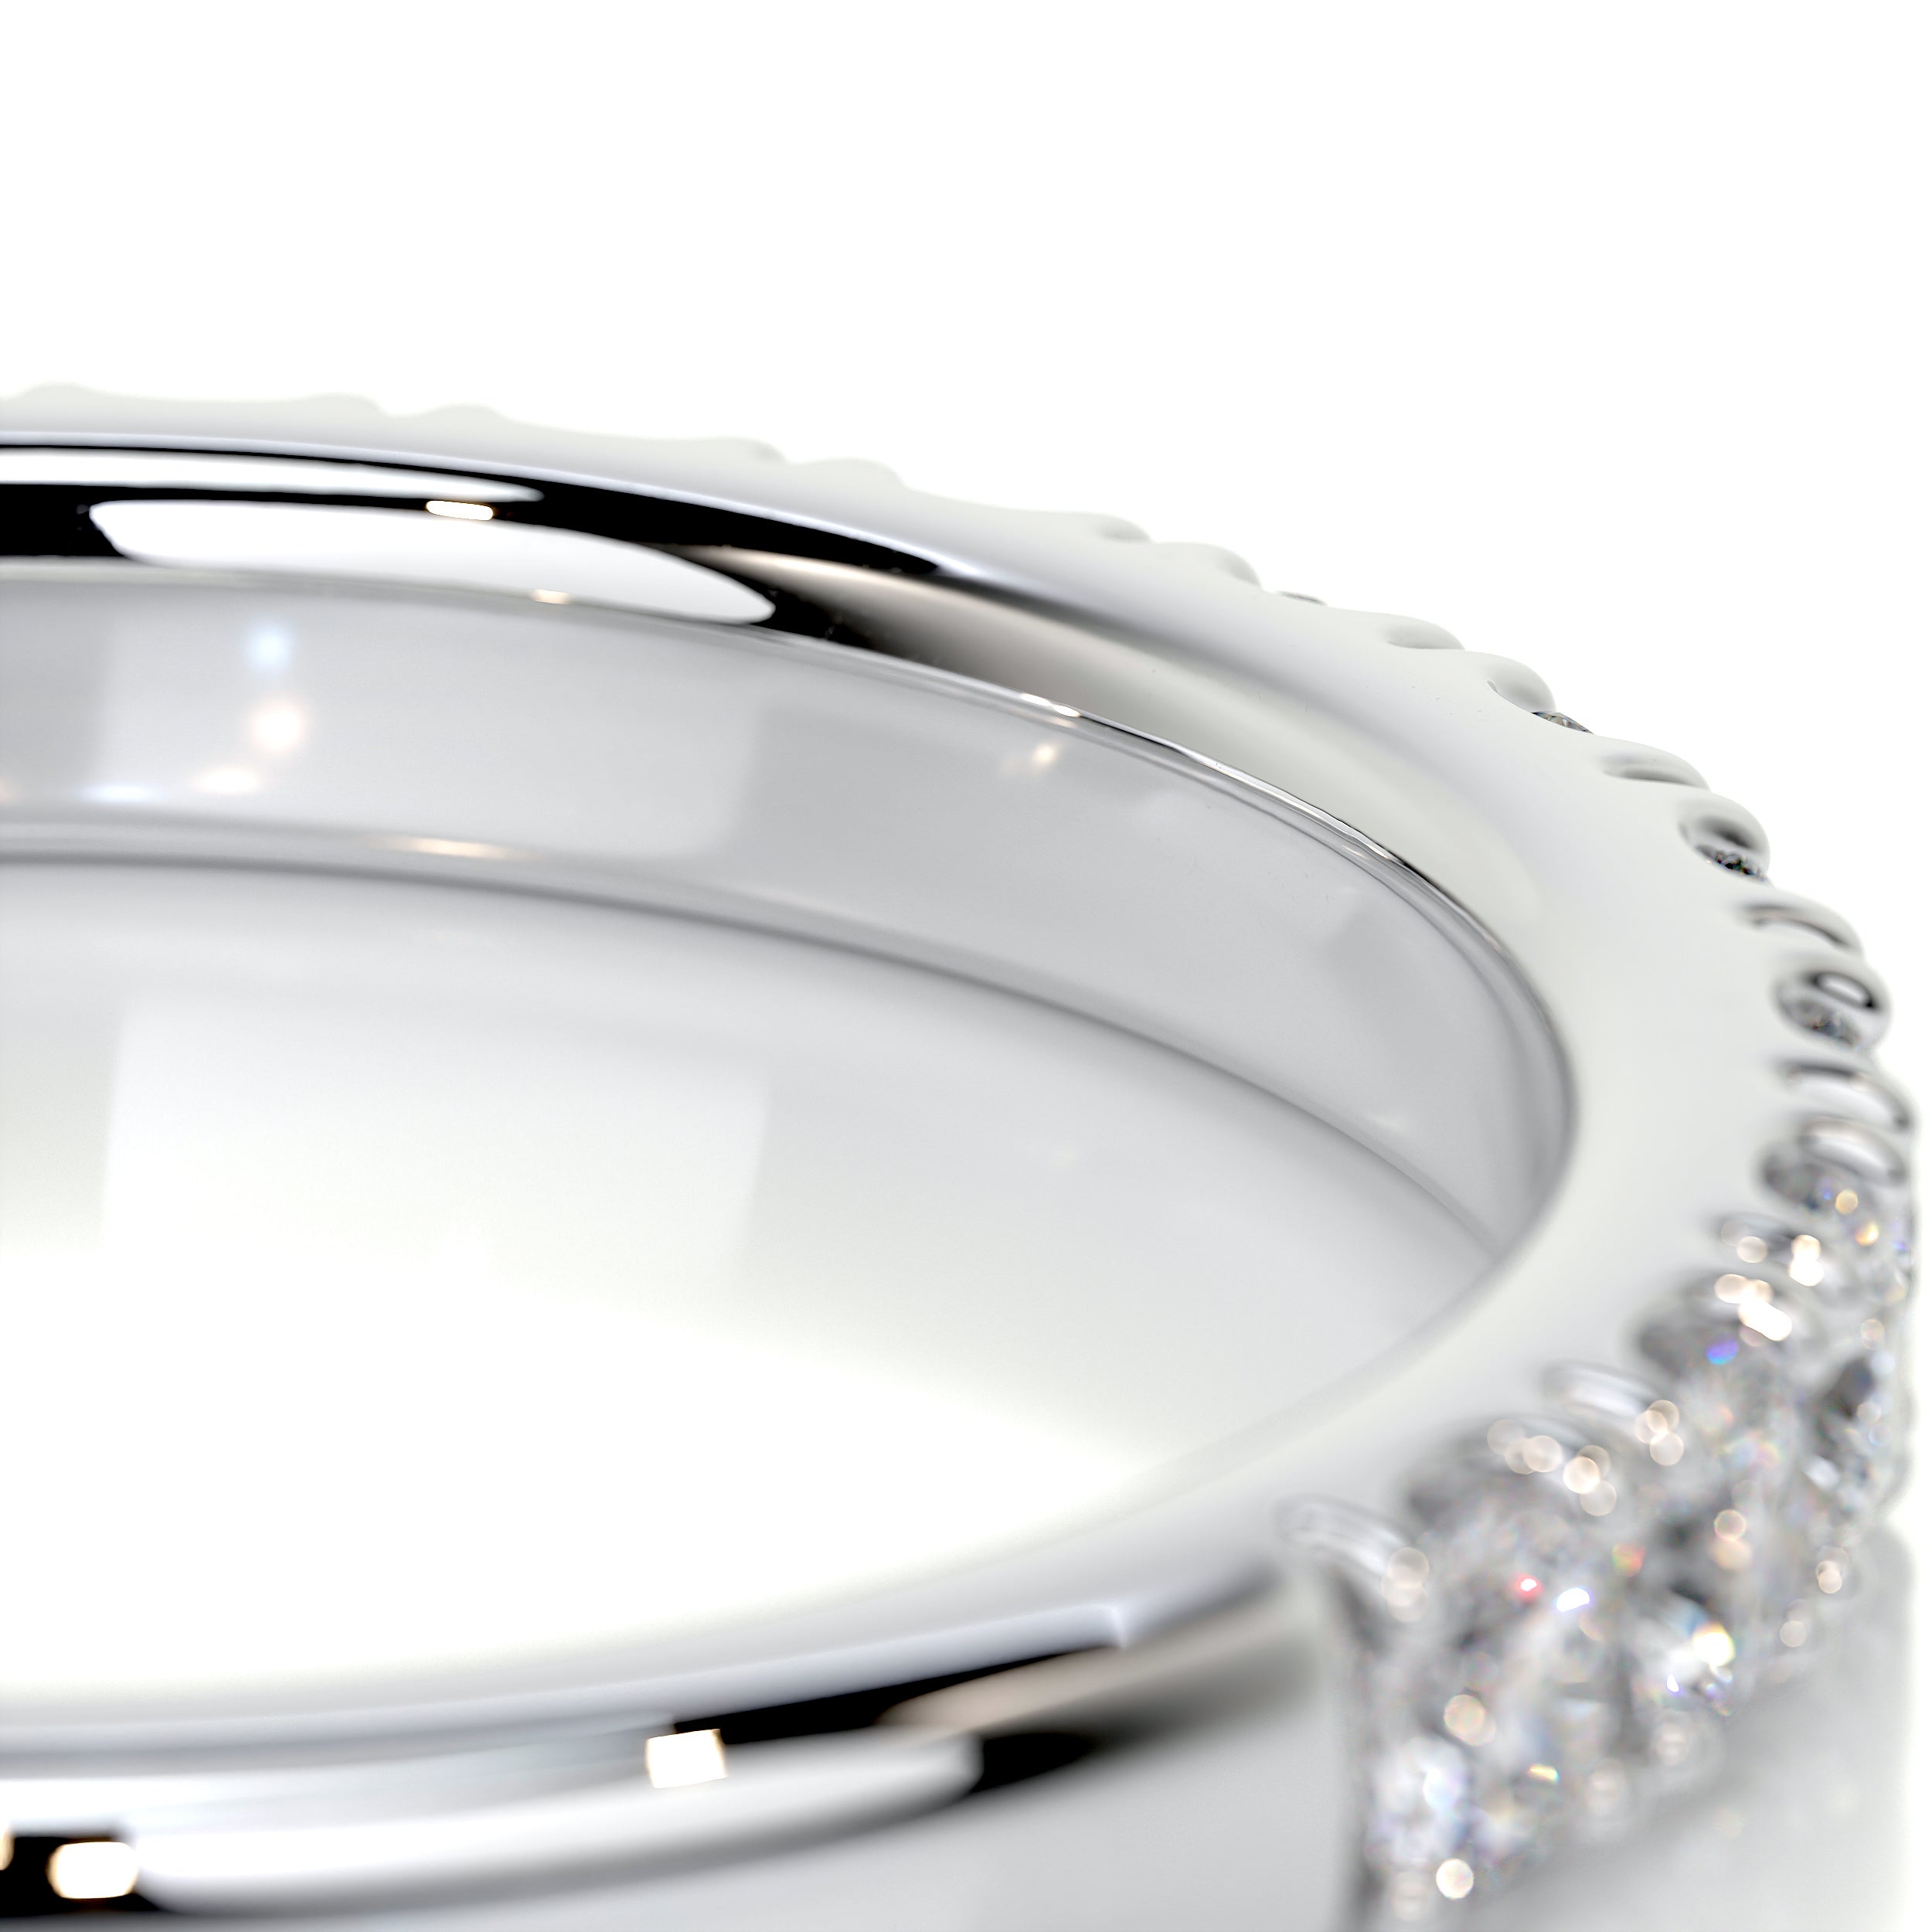 Blair Diamond Wedding Ring   (0.5 Carat) -18K White Gold